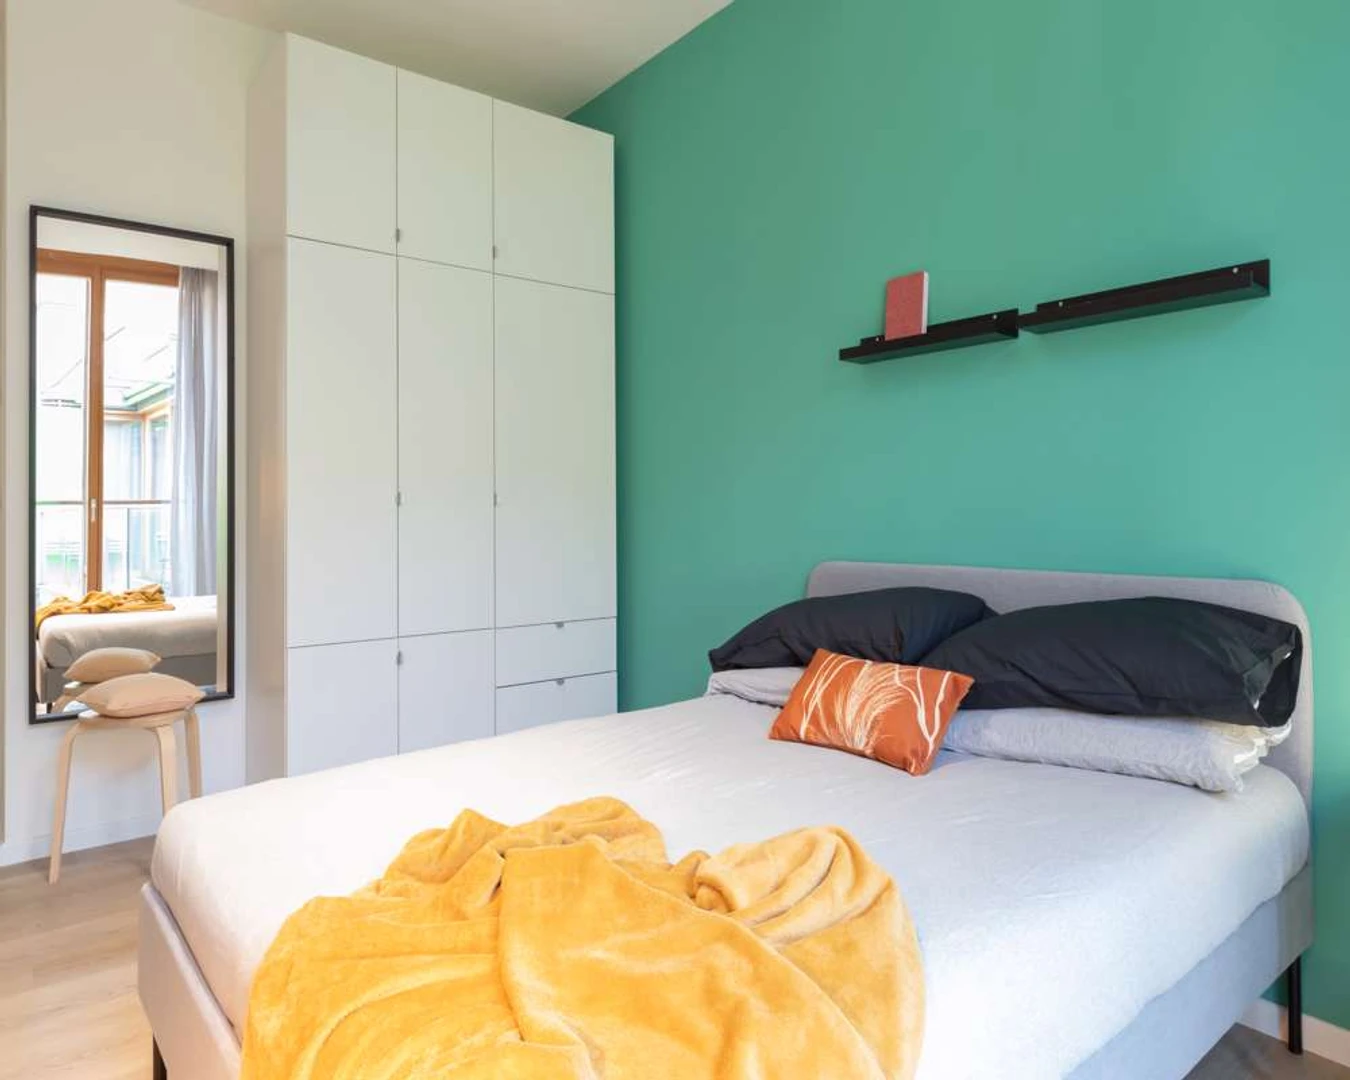 Alquiler de habitación en piso compartido en Trento